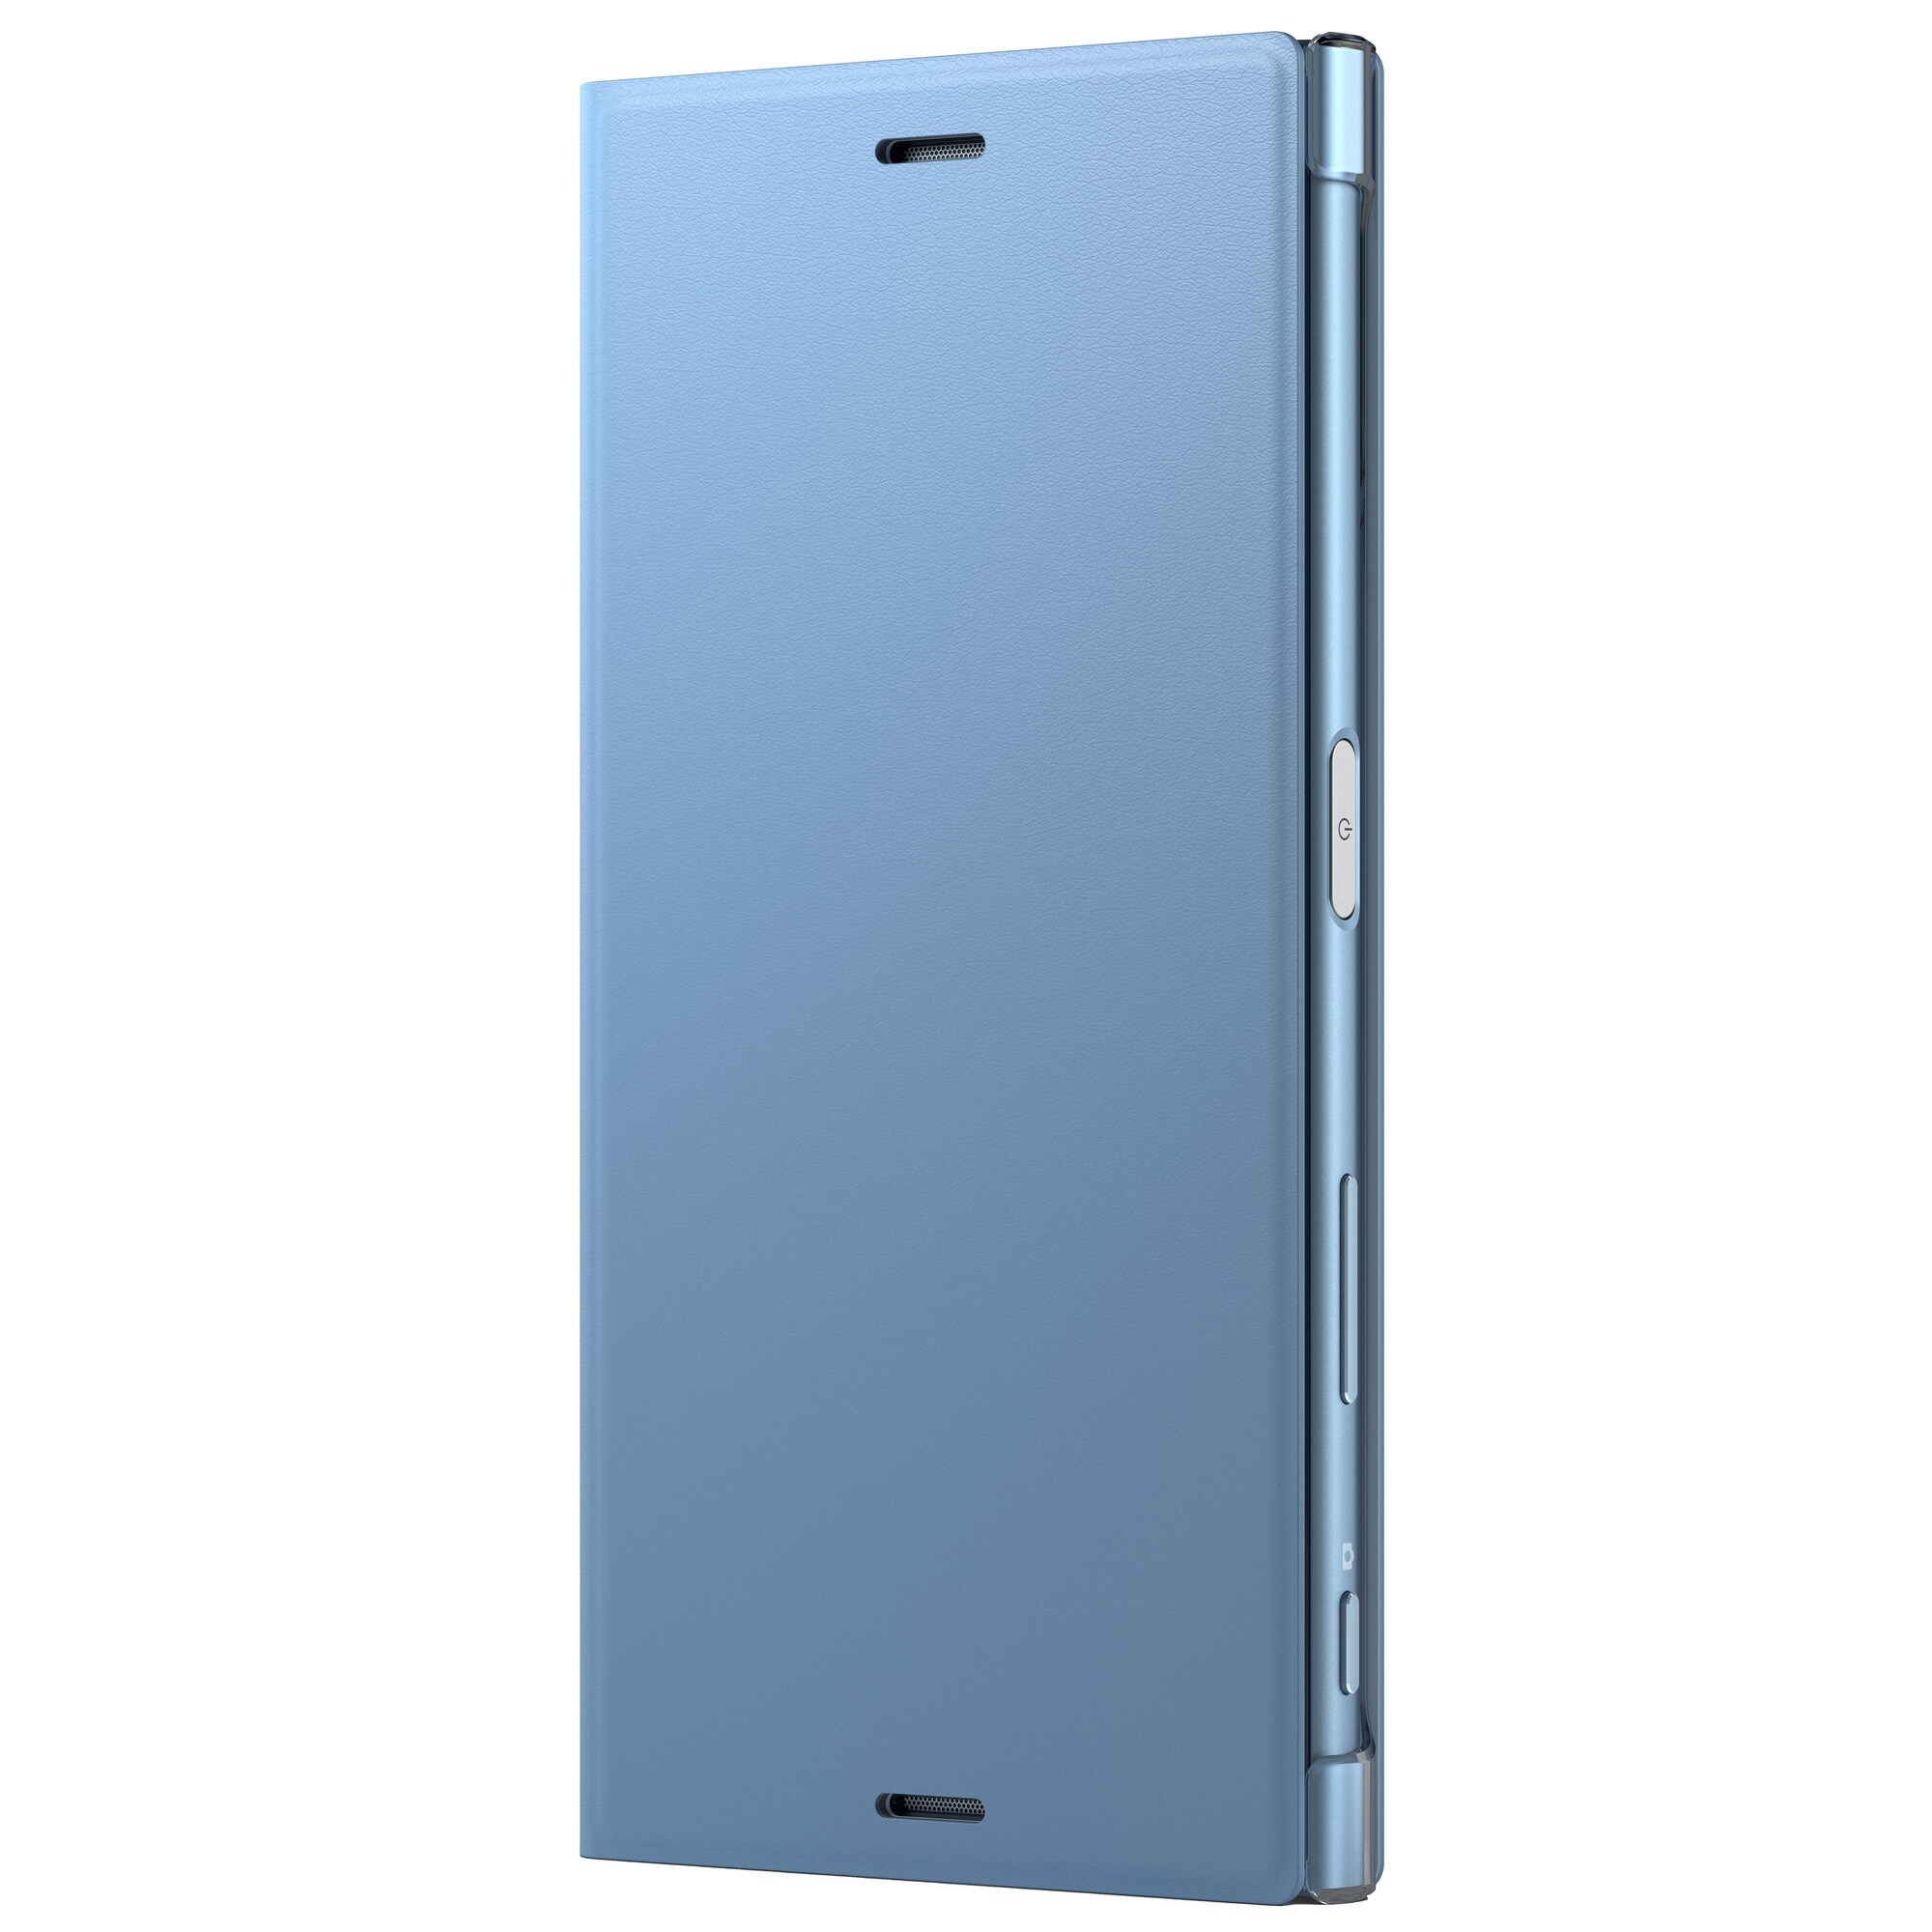 Sony Xperia XZs Style suojakotelo (sininen) - Gigantti verkkokauppa